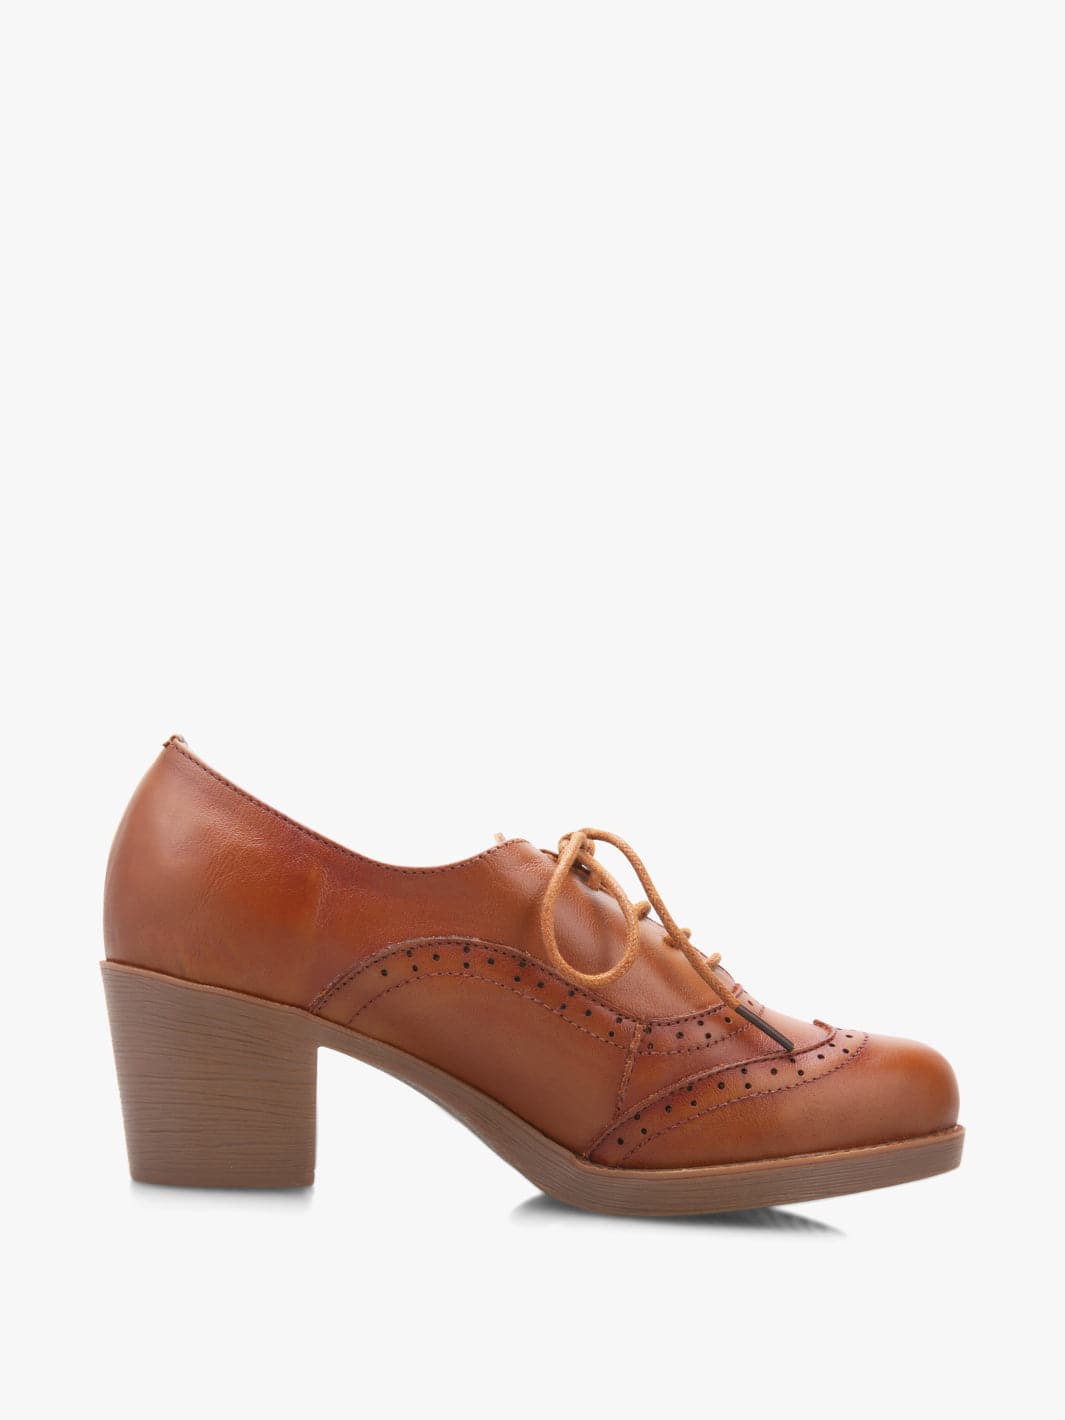 retort Malen doos Vintage Leather Shoes for Women - ECOSUSI